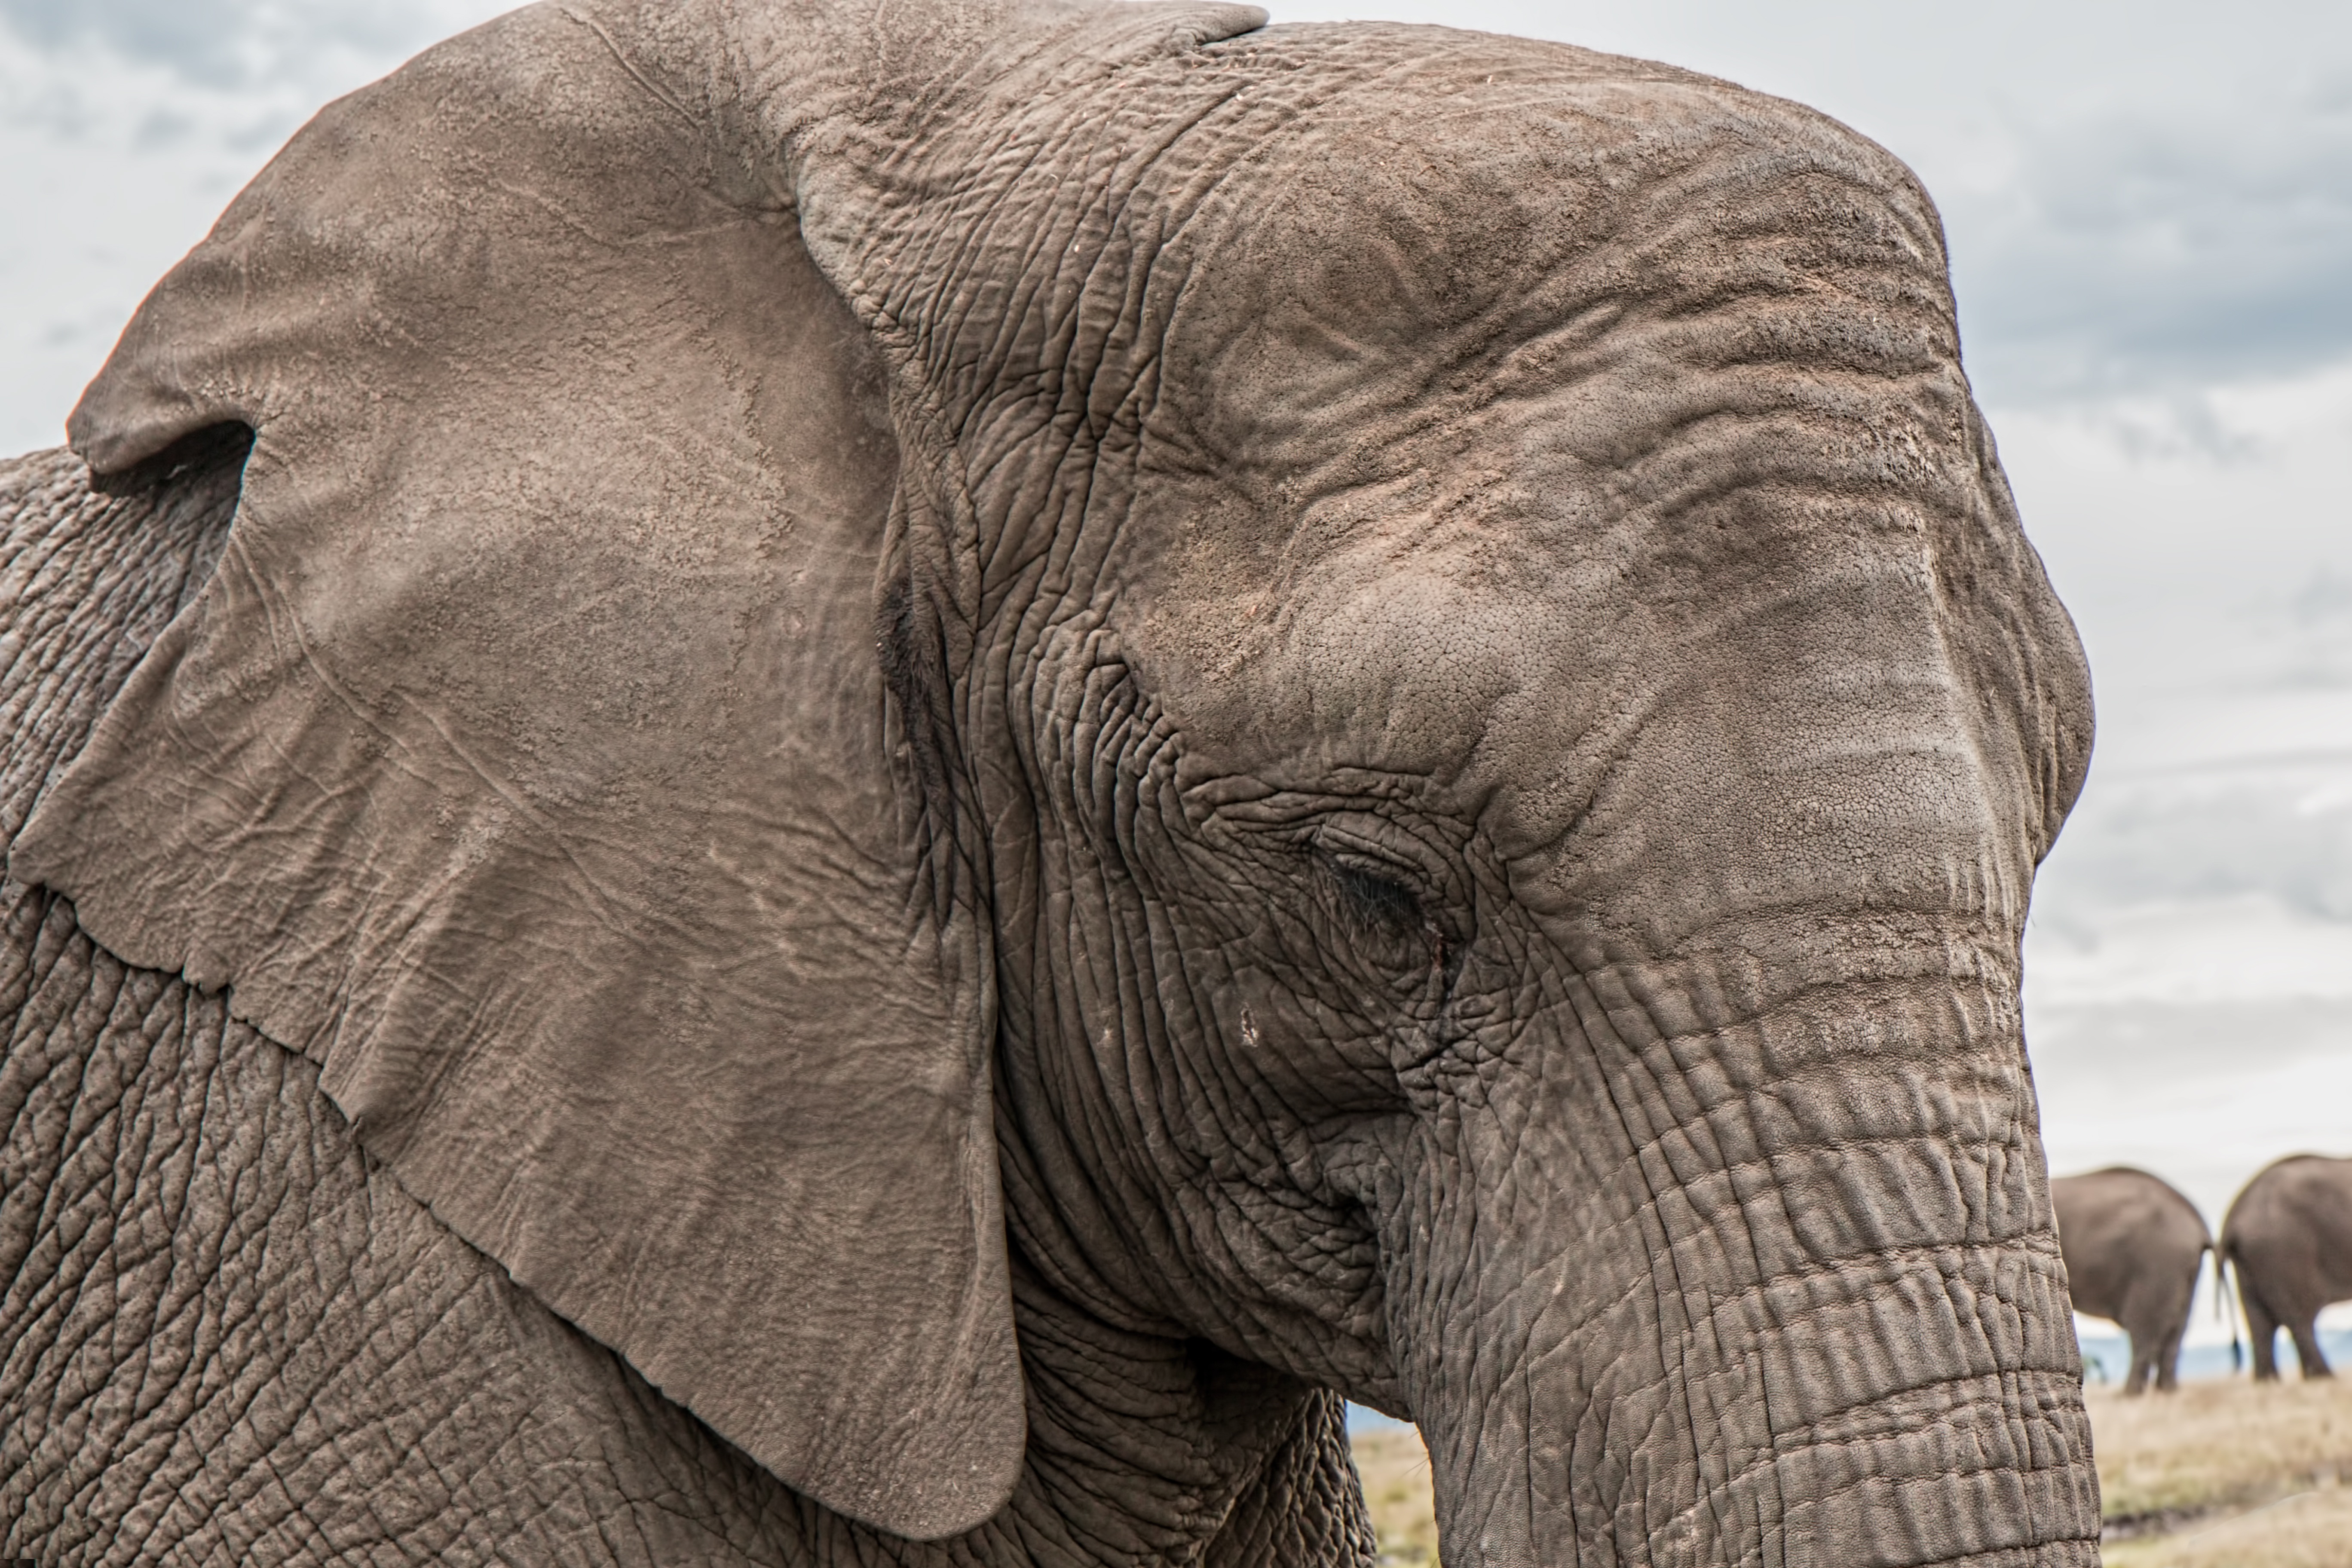 papel pintado de elefante,elefante,elefantes y mamuts,animal terrestre,elefante indio,elefante africano